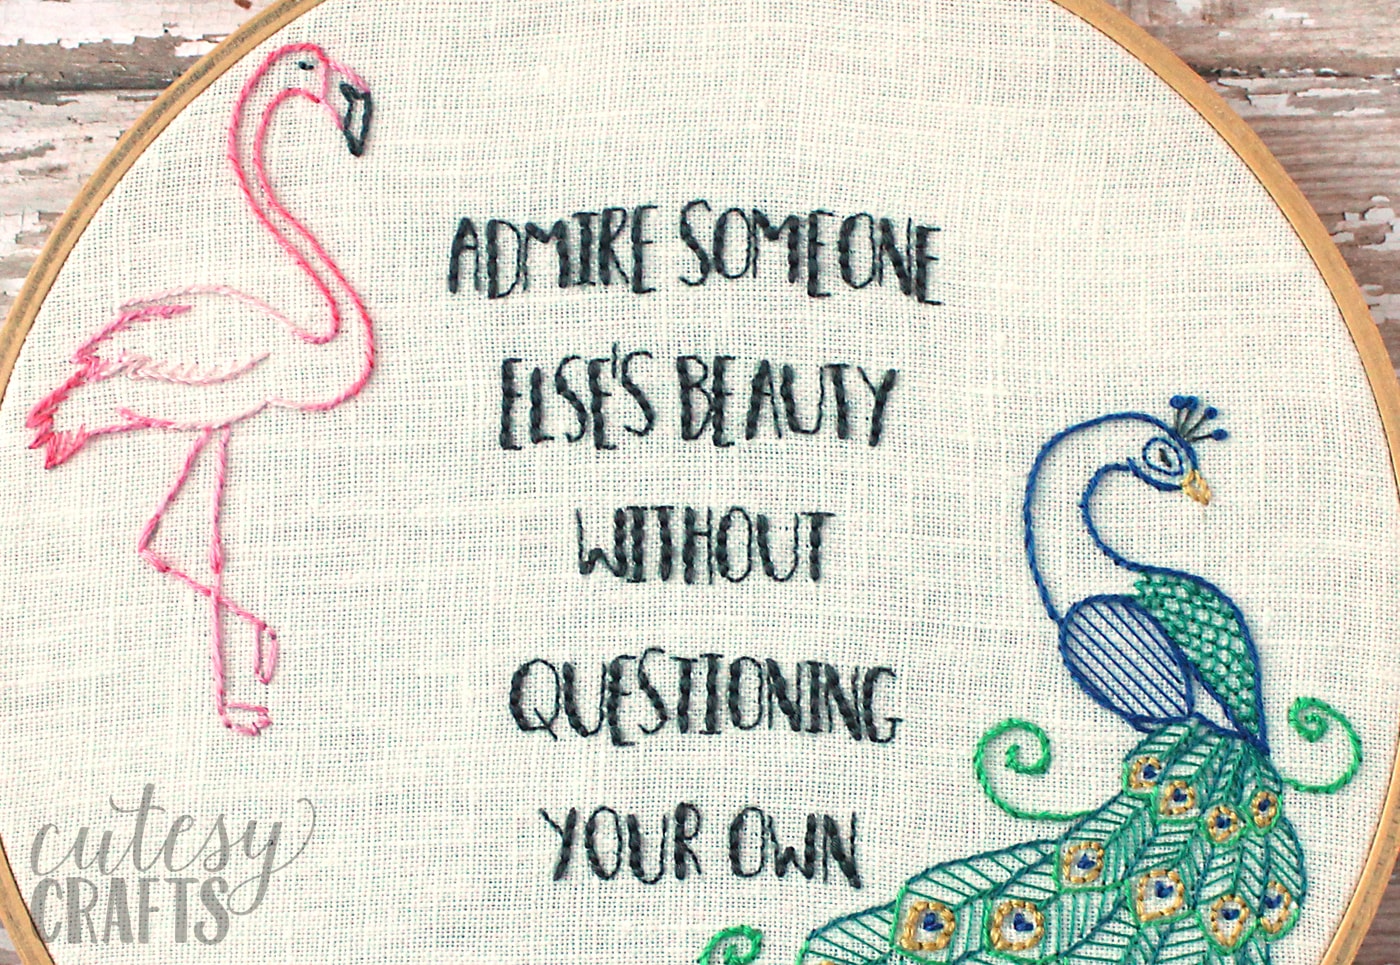 Motif de broderie gratuit Flamant rose et paon - Citation broderie "Admirez la beauté de quelqu'un d'autre sans remettre en question la vôtre" #embroiderypattern #freeembroiderypattern #flamingo #peacock #embroiderypatternquote